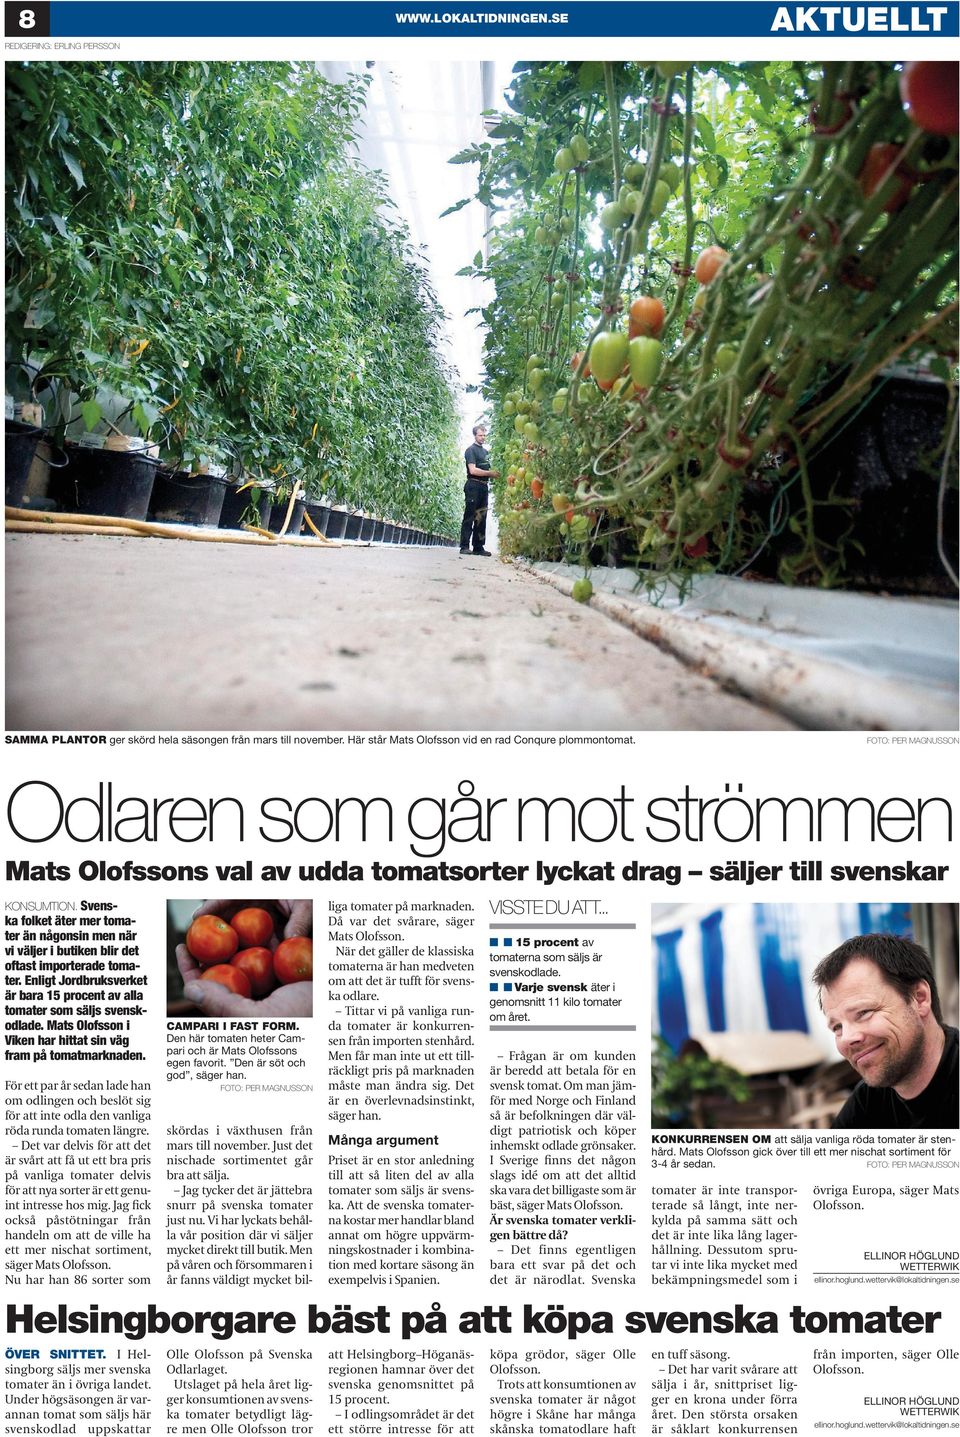 Svenska folket äter mer tomater än någonsin men när vi väljer i butiken blir det oftast importerade tomater. Enligt Jordbruksverket är bara 15 procent av alla tomater som säljs svenskodlade.